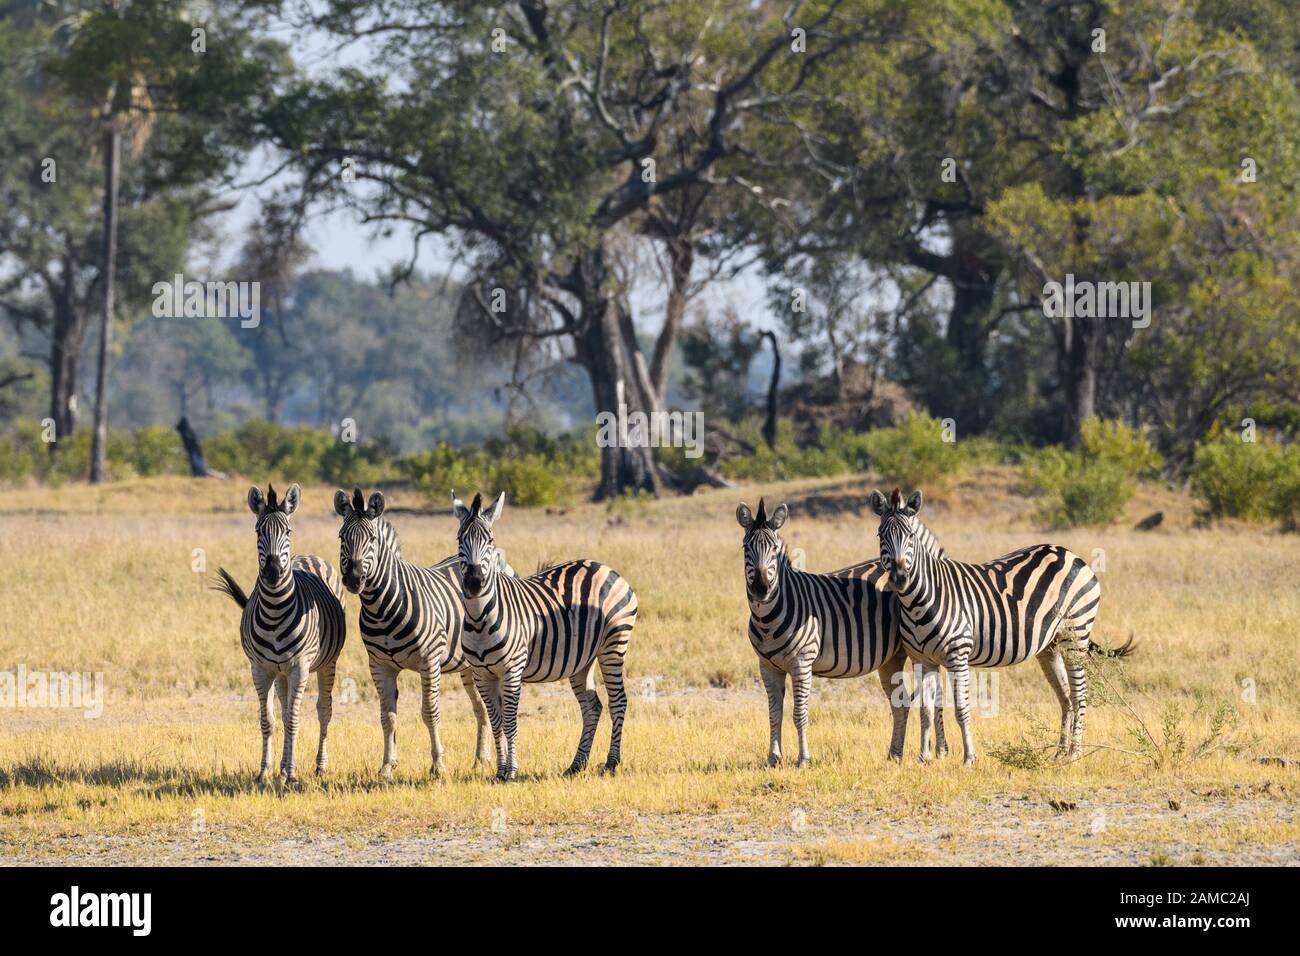 Zèbre de Burchell, Equus quagga burchellii, Macatoo, Delta d'Okavango, Botswana. Également connu sous le nom de Plaines ou de zèbre commune Banque D'Images